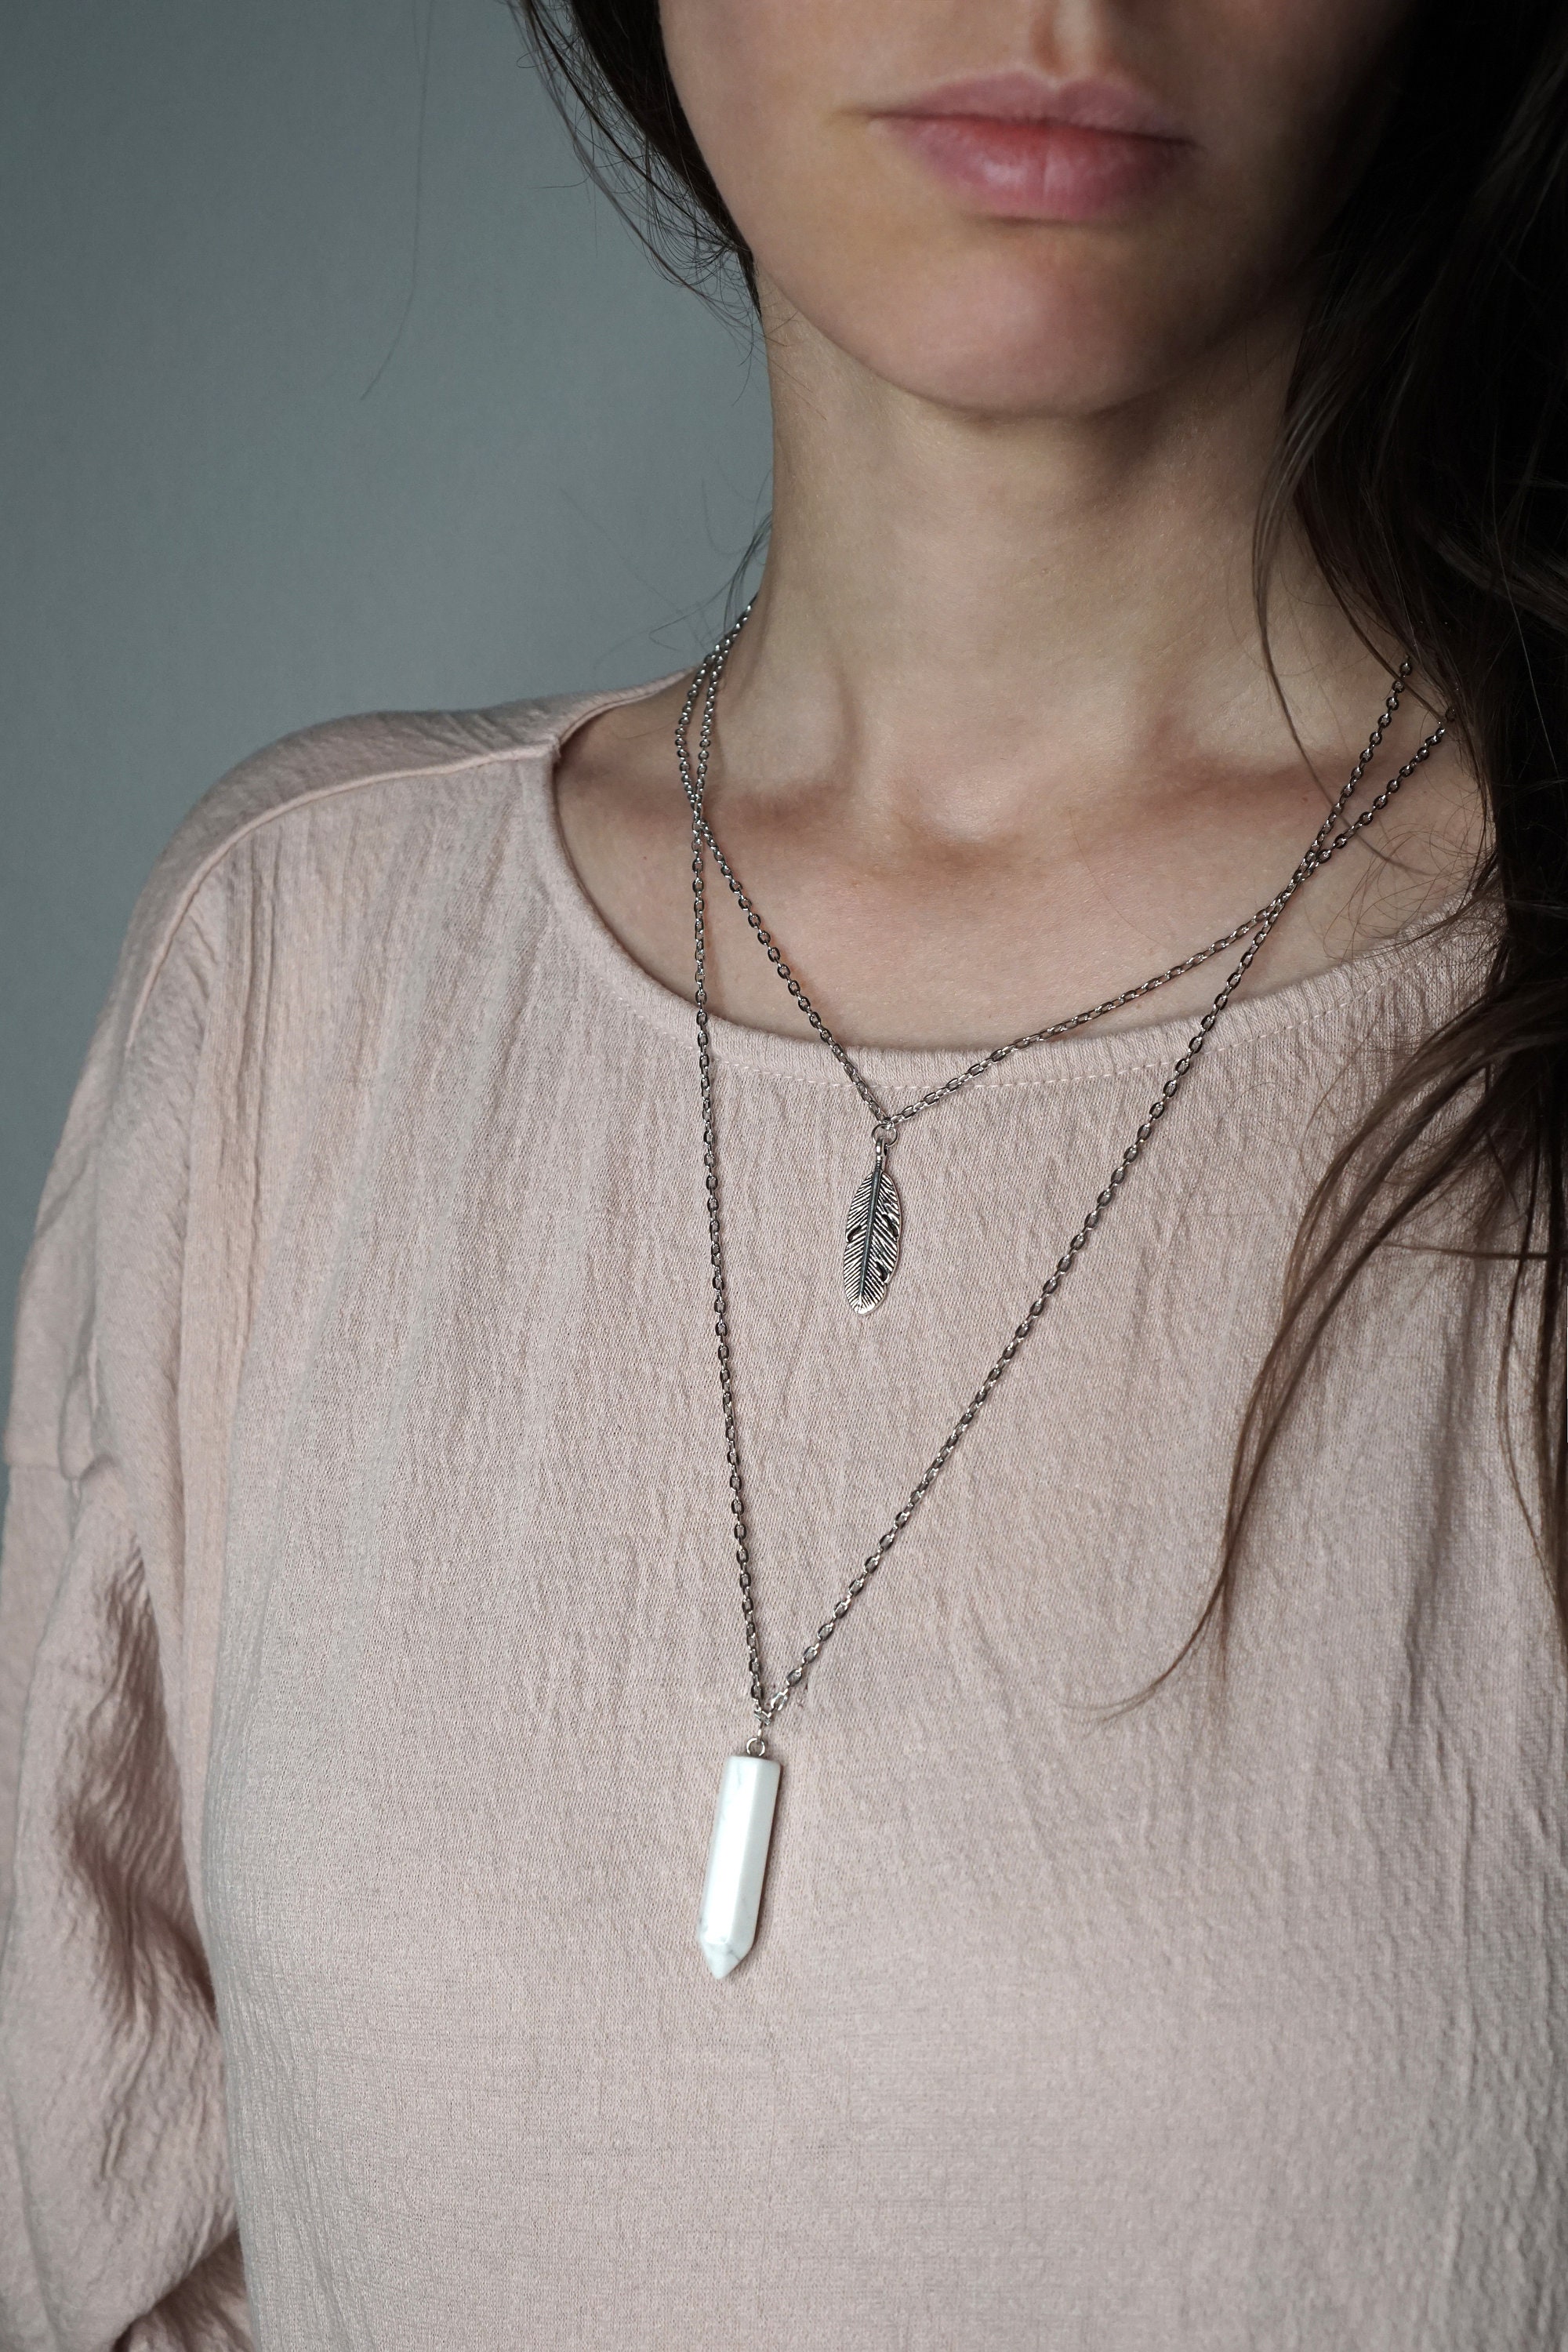 Layered necklace boho necklace Christmas gifts gemstone | Etsy